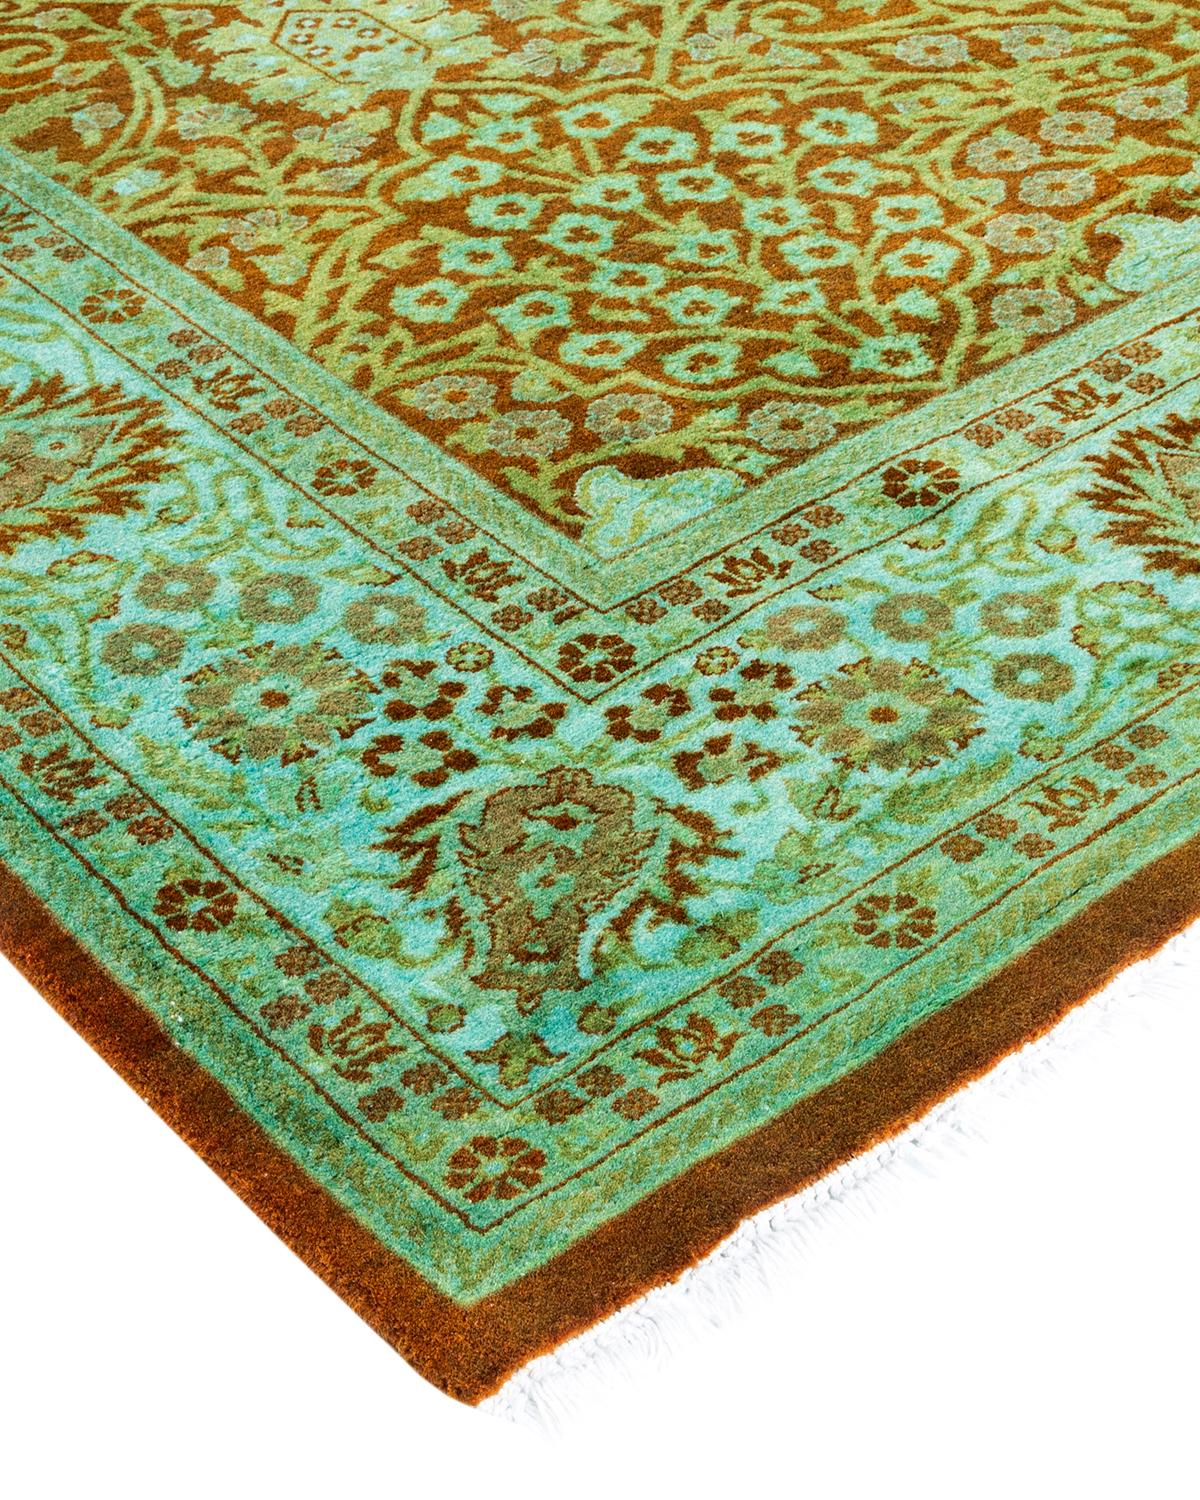 Vibrance-Teppiche sind der Inbegriff von Klassik mit Pfiff: traditionelle Muster in leuchtenden Farben gefärbt. Jeder handgeknüpfte Teppich wird mit einem 100 % natürlichen botanischen Farbstoff gewaschen, der verborgene Nuancen in den Designs